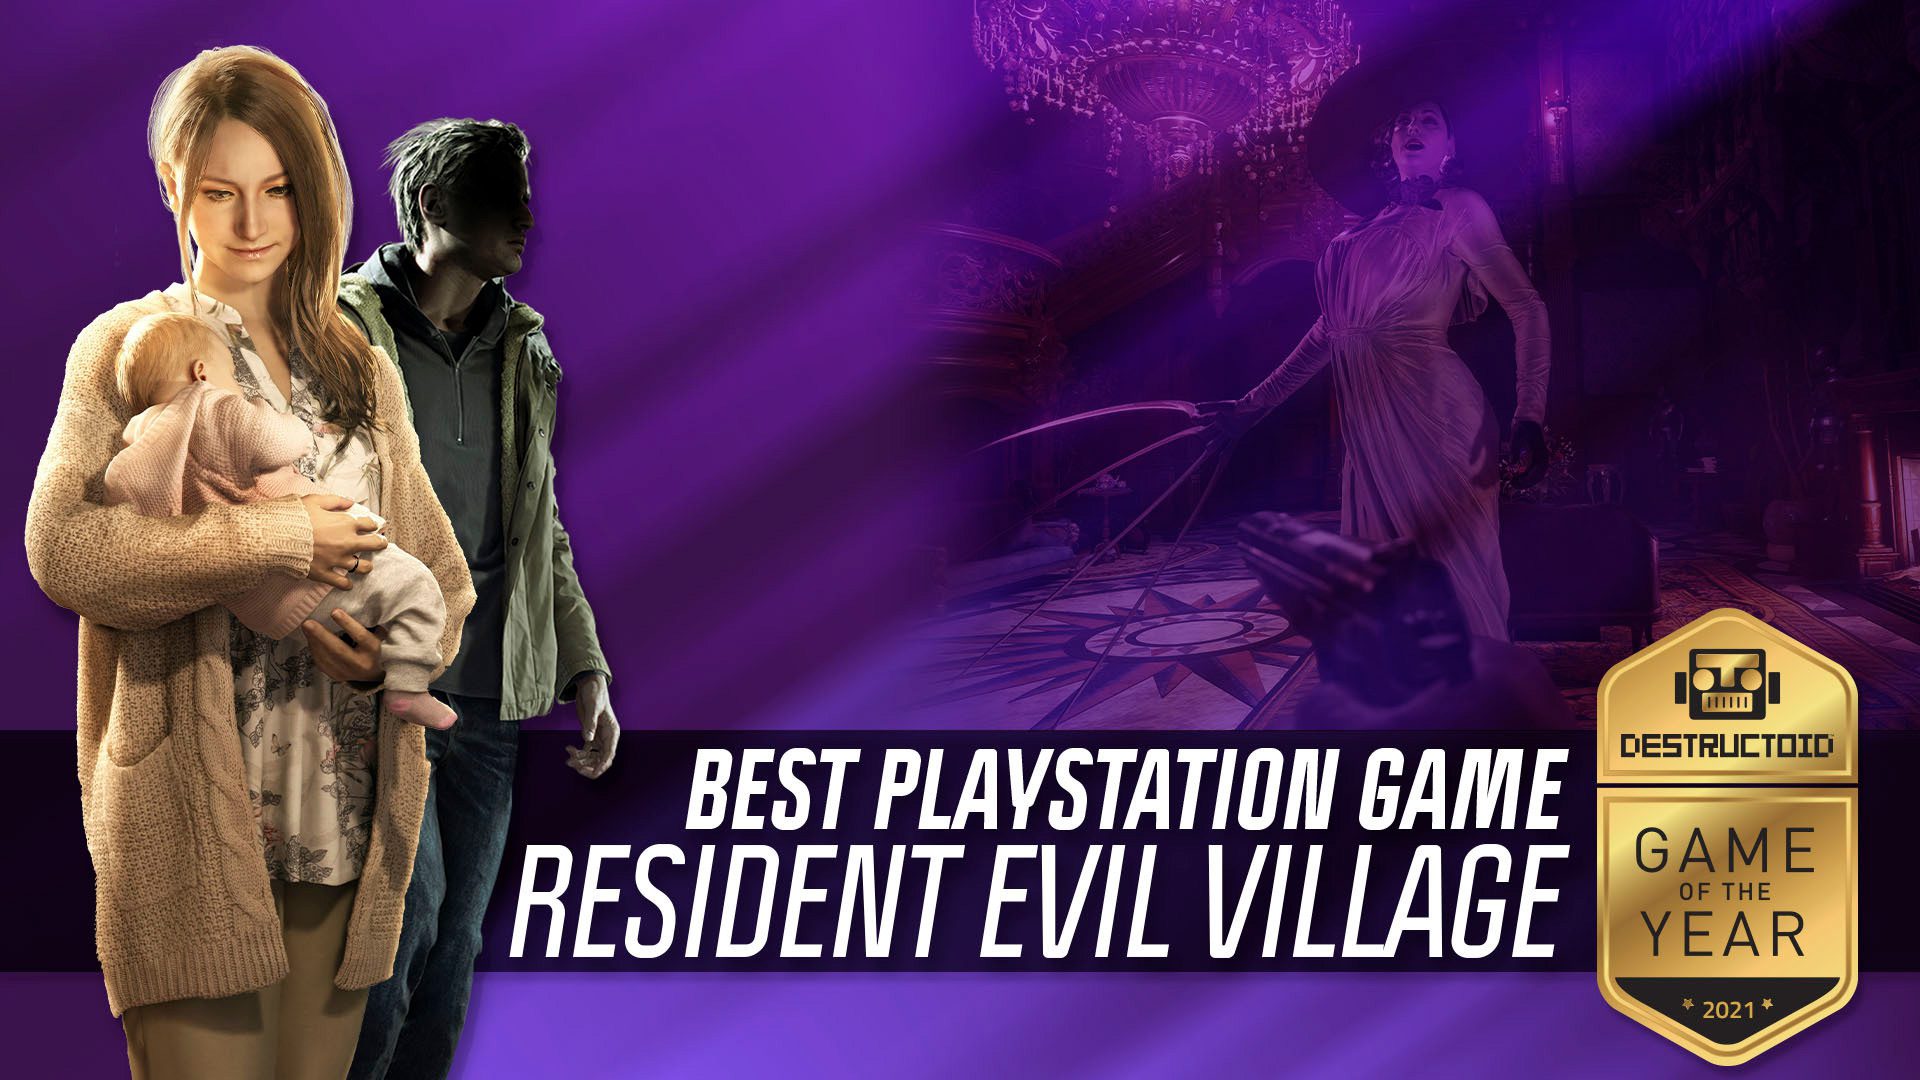 Best PlayStation Game of 2021 award for Resident Evil Village